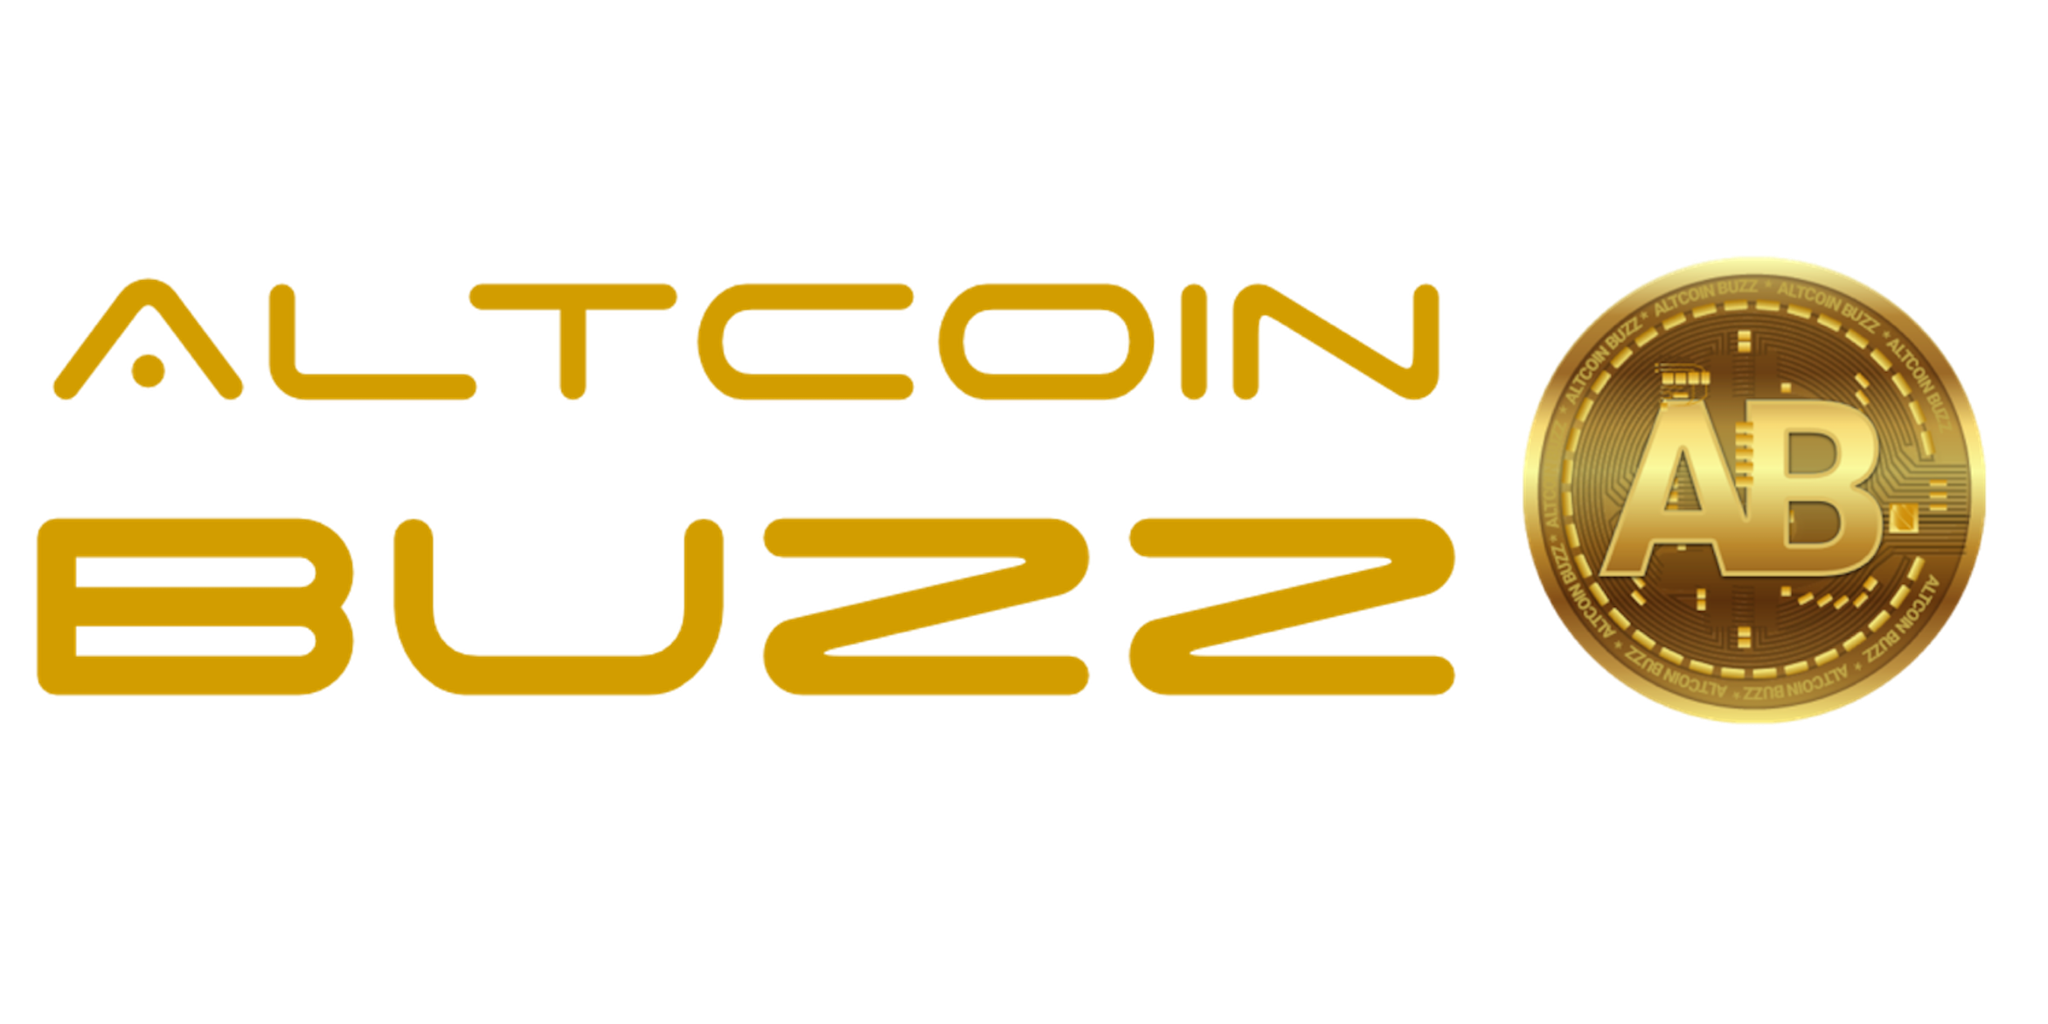 Altcoin-Buzz-Header-1-1.png